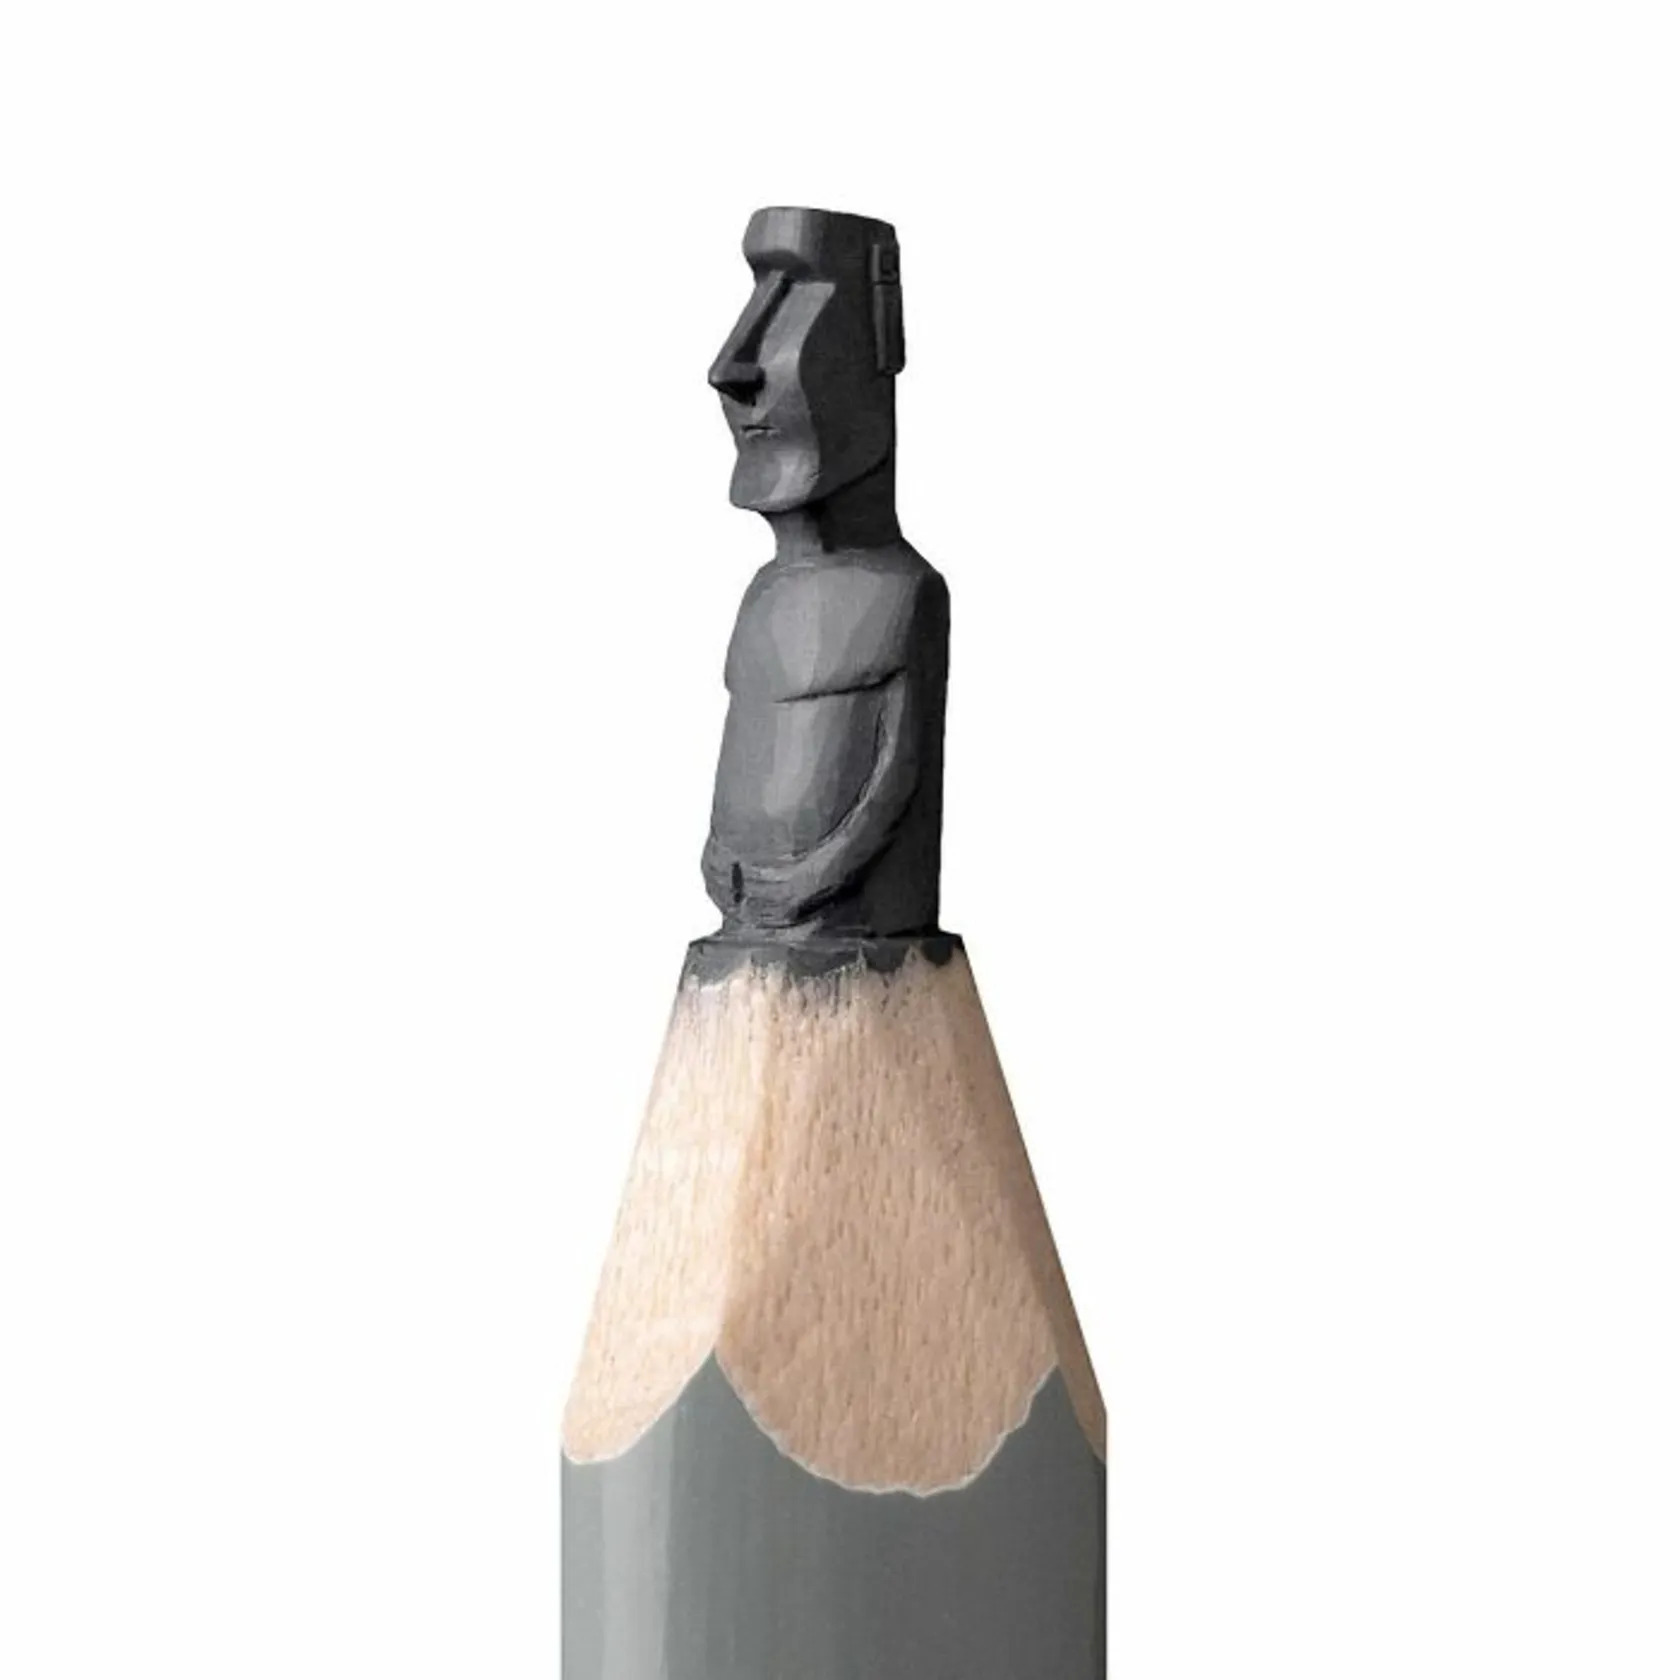 tip-of-pencil-miniature-sculptures-3-661ee7a4a55162c757fc593f_2_11zon